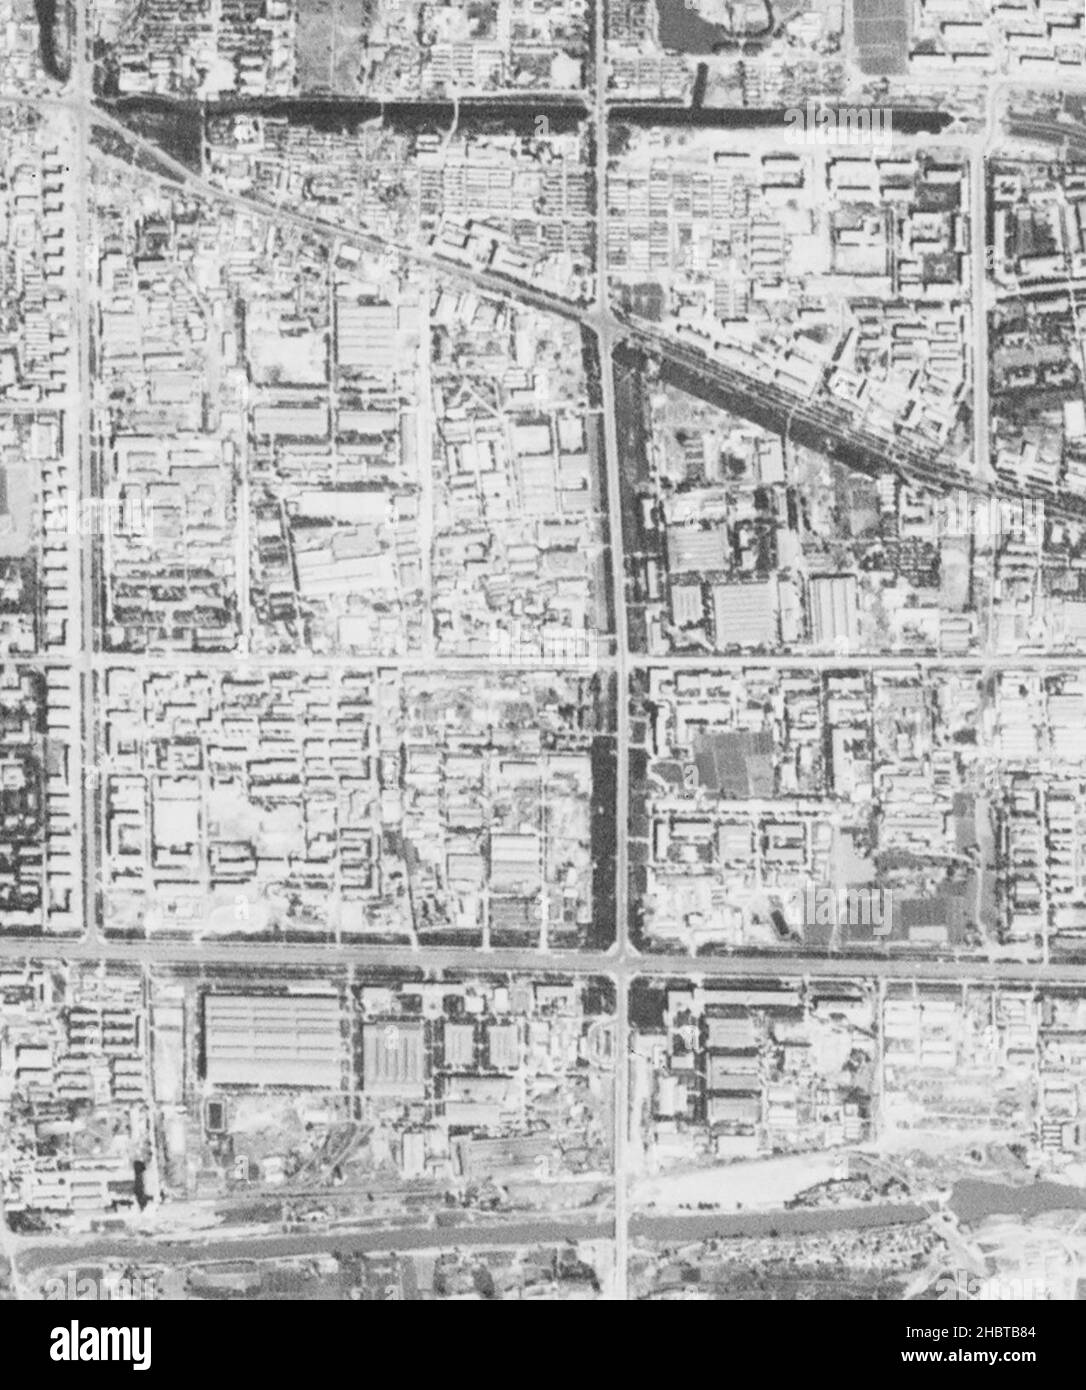 Satellitenbild des Geschäftsviertels von Peking vor dem Bau des Geschäftsviertels. Räumlich vorläufig korrigiert. Ca. 20. September 1967 Stockfoto